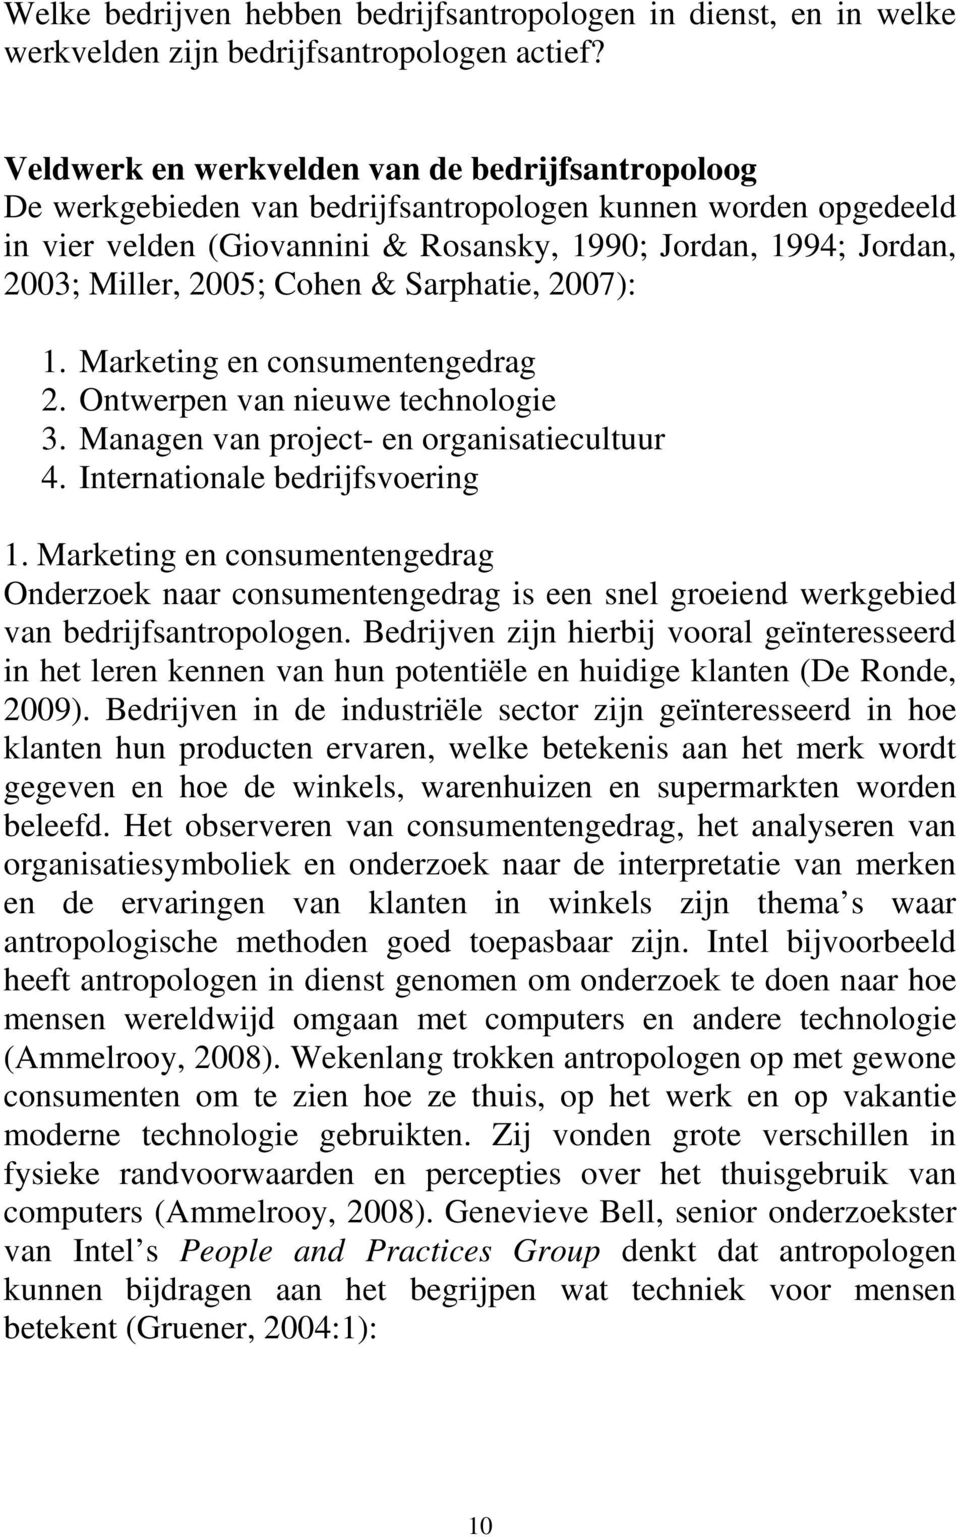 2005; Cohen & Sarphatie, 2007): 1. Marketing en consumentengedrag 2. Ontwerpen van nieuwe technologie 3. Managen van project- en organisatiecultuur 4. Internationale bedrijfsvoering 1.